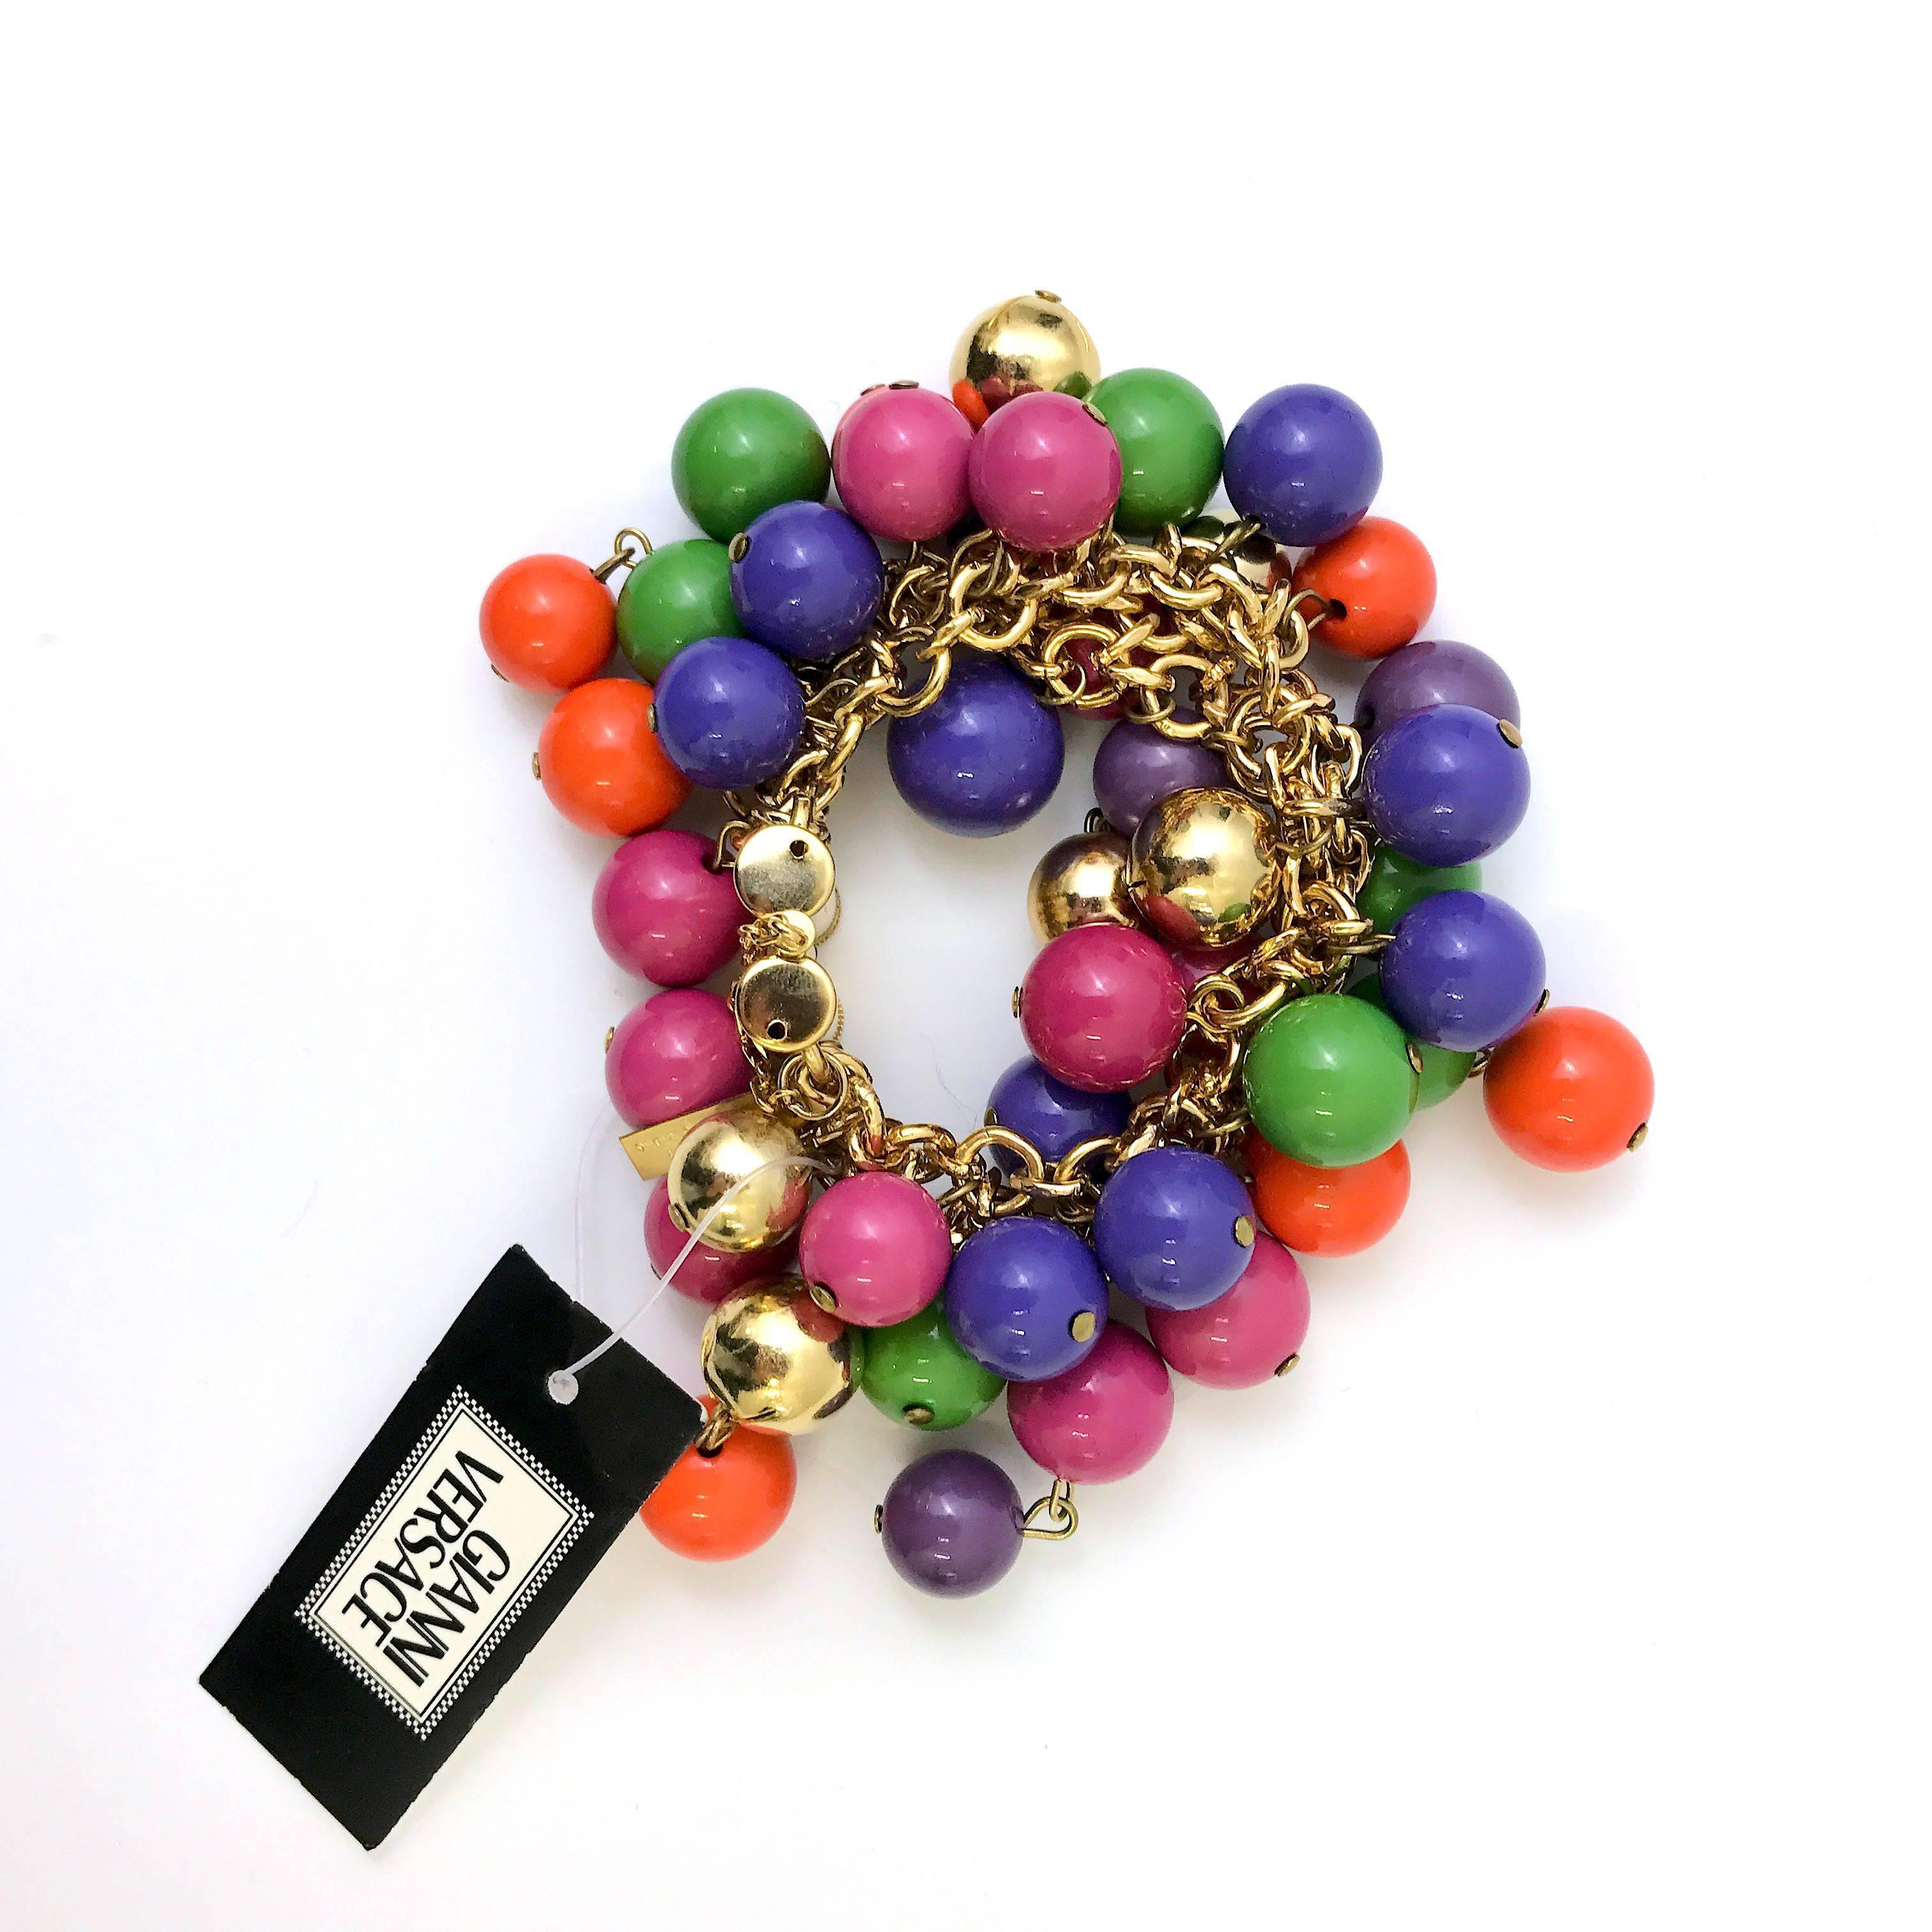 Ce bracelet de Gianni Versace est très rare avec ses perles multicolores en forme de grappes. Il s'agit sans aucun doute d'une pièce de collection pour tout amateur de Gianni Versace. Les perles rondes aux couleurs vives sont suspendues à une chaîne